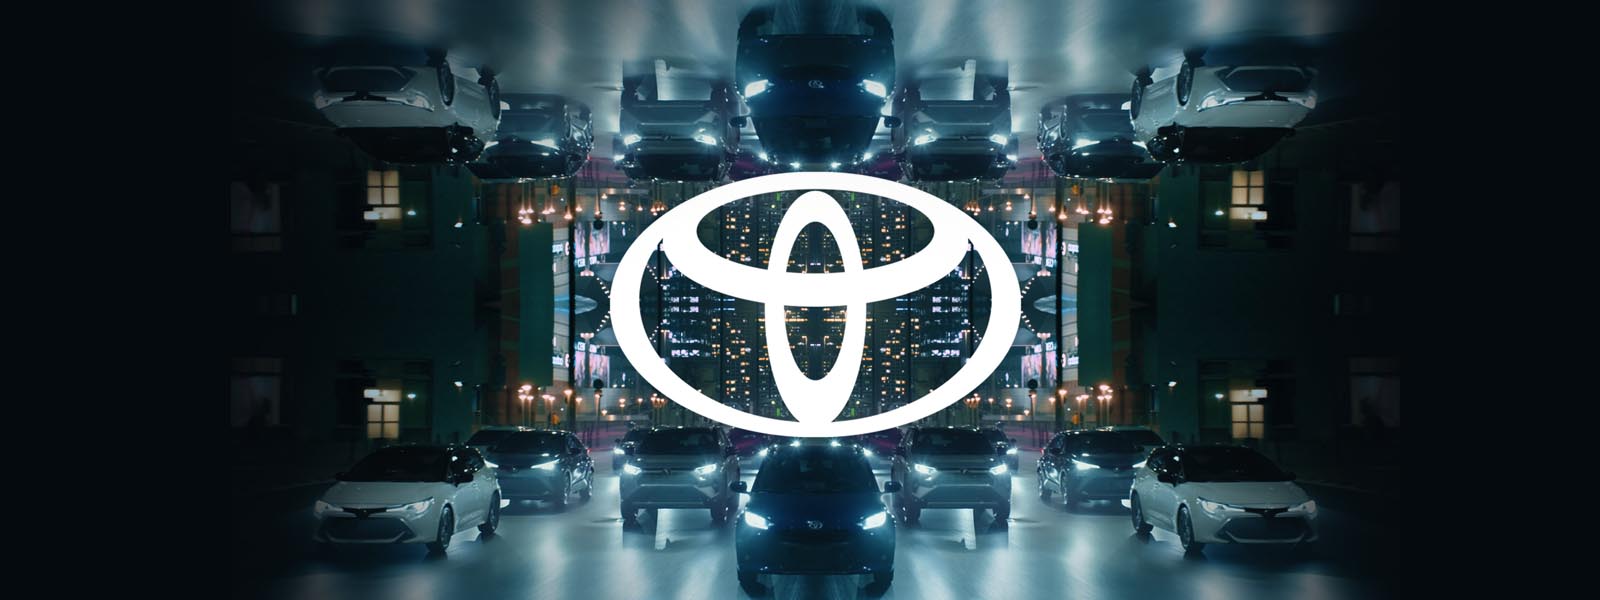 Toyota представляет свой новый фирменный дизайн во всех средствах коммуникации